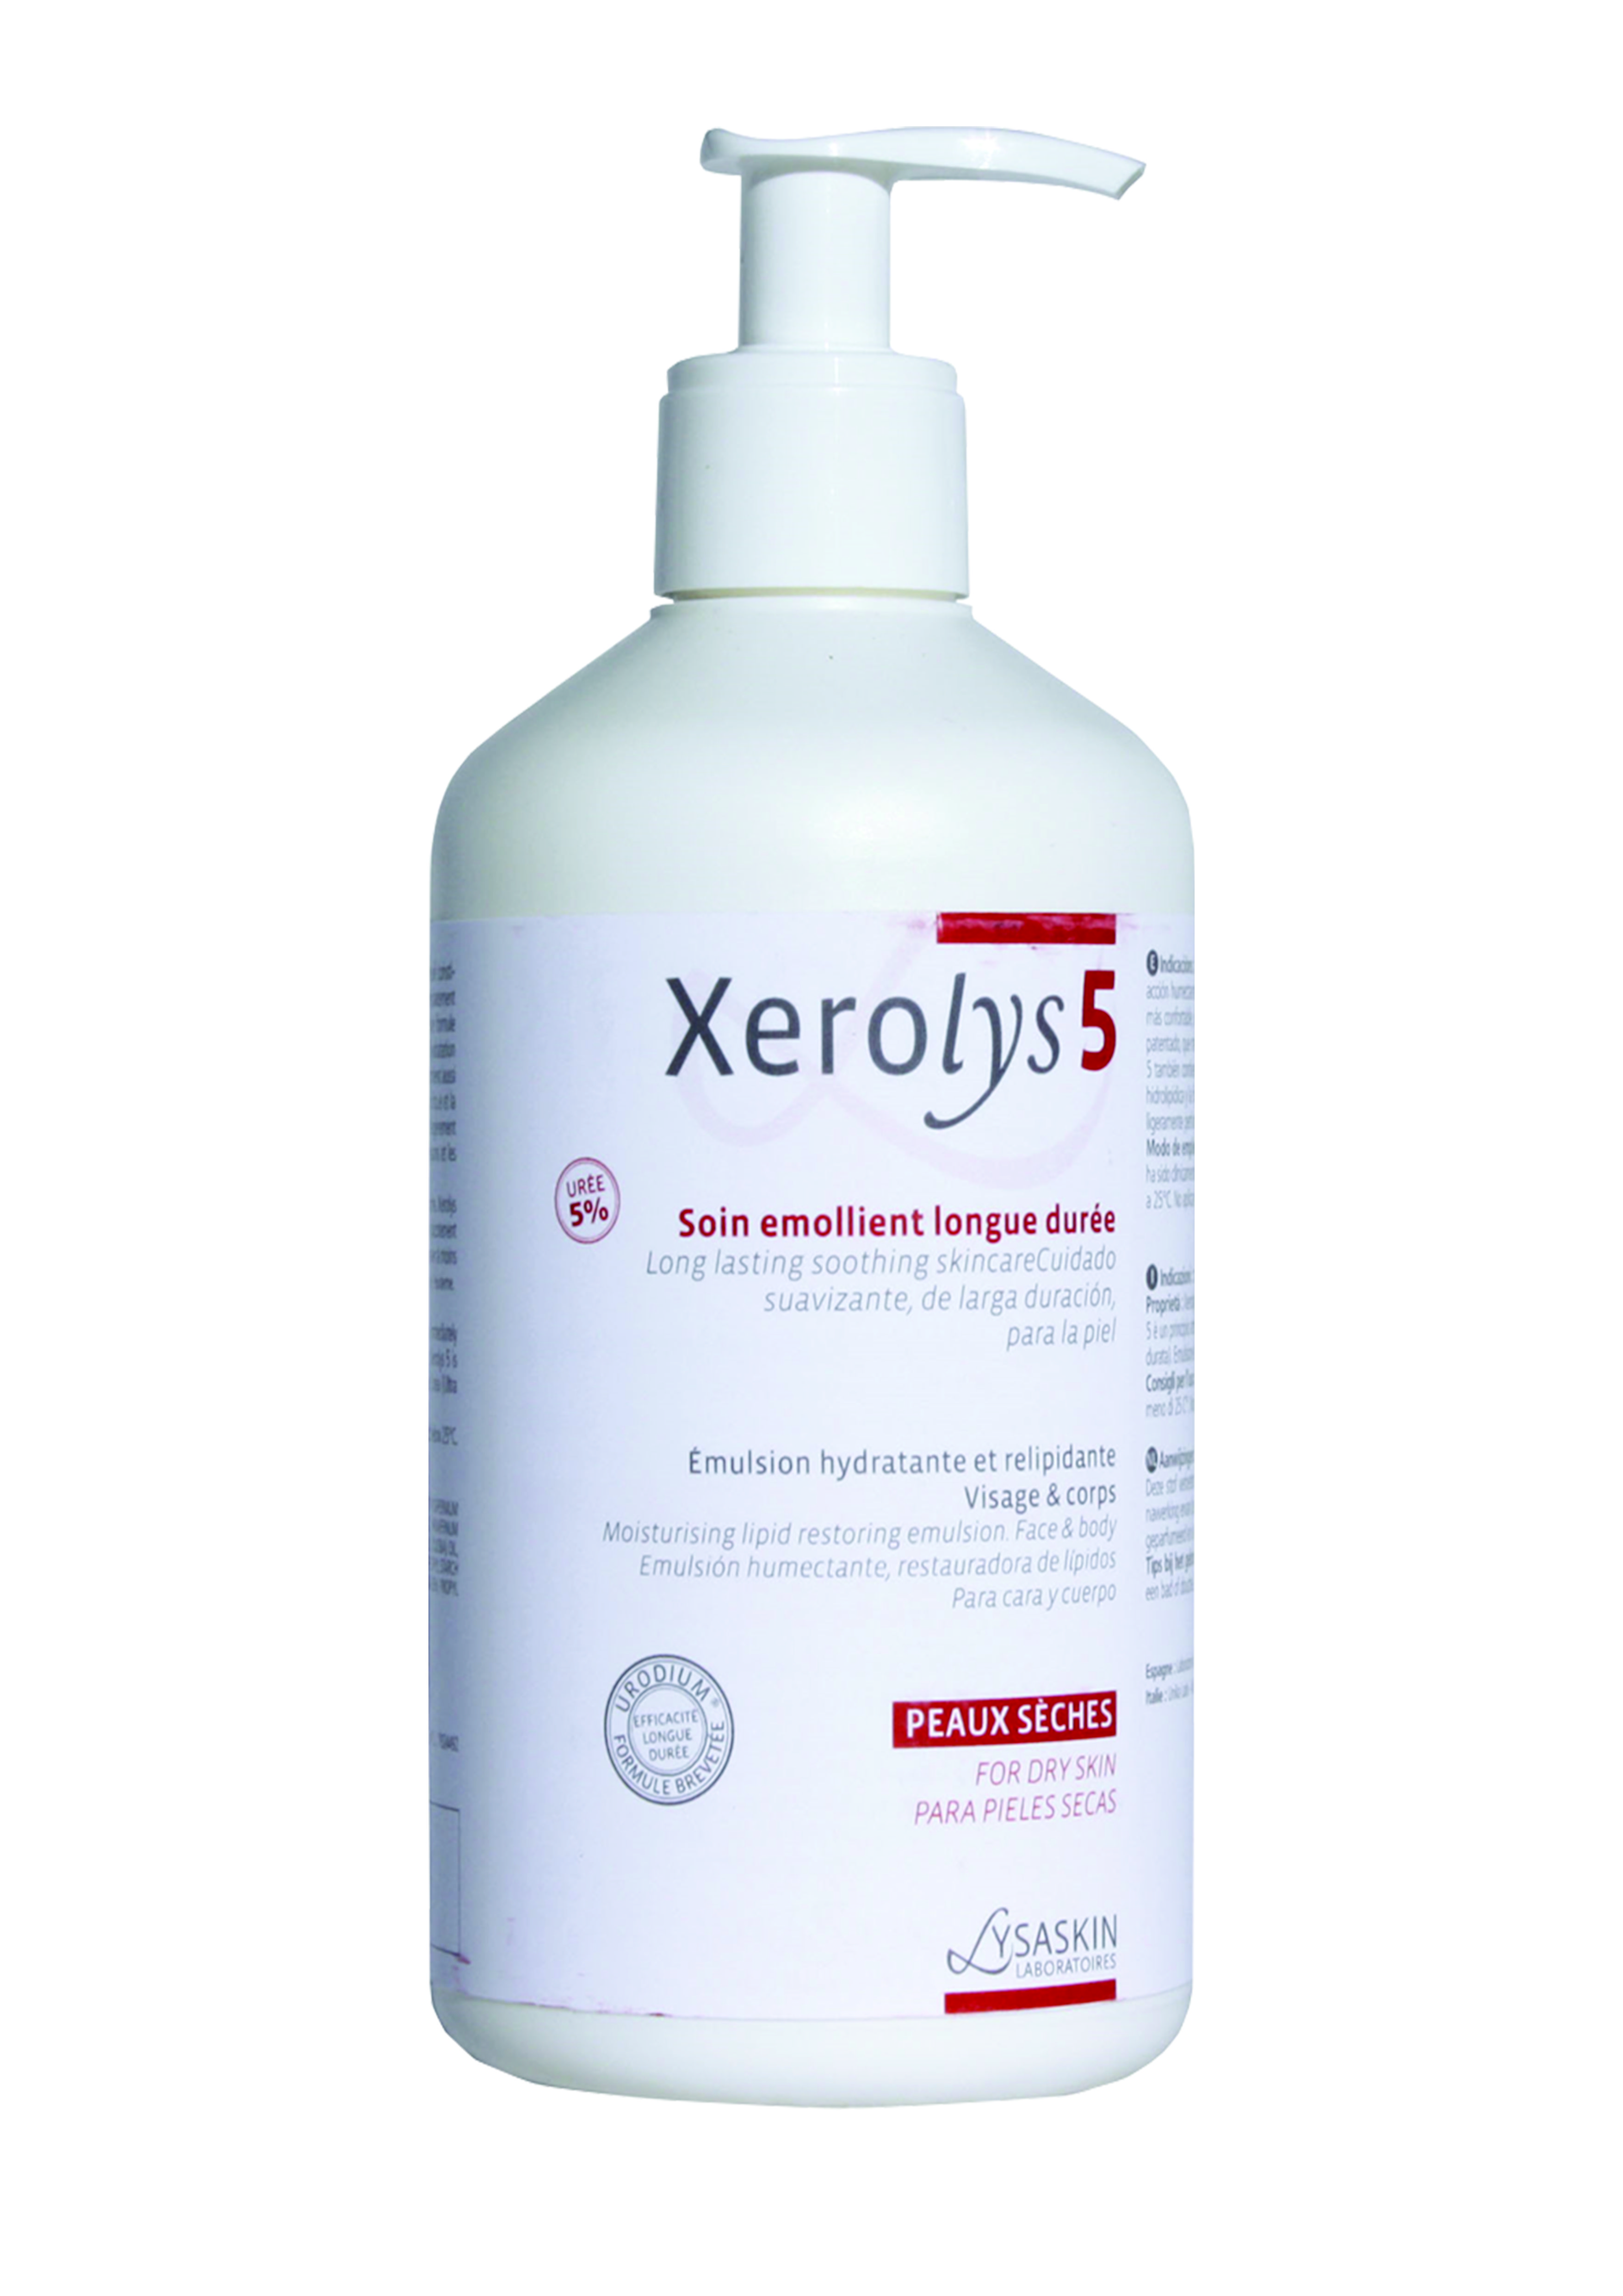 Lysaskin Xerolys 5 Emulsie hidratantă de lungă durată și relipidantă pentru corp